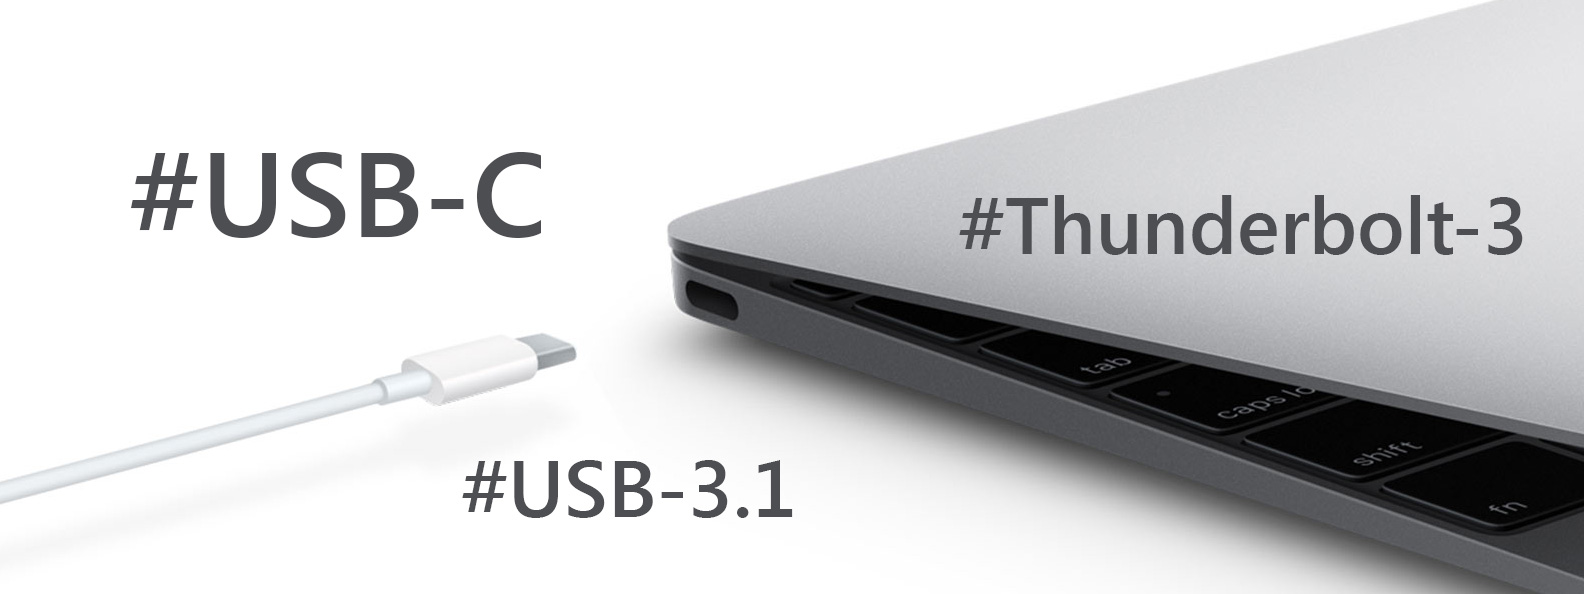 Góc giải mã: USB Type-C vs USB 3.0 (3.1) vs ThunderBolt 3 là gì?